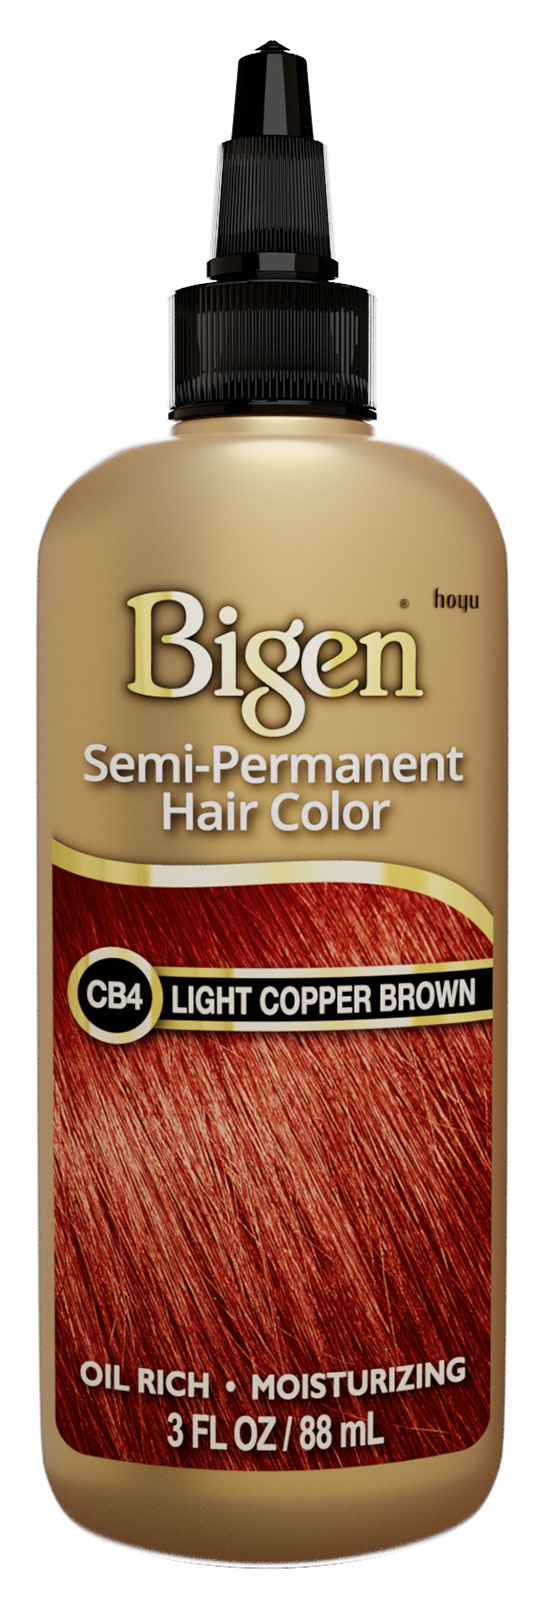 CB4-Light Copper Brown